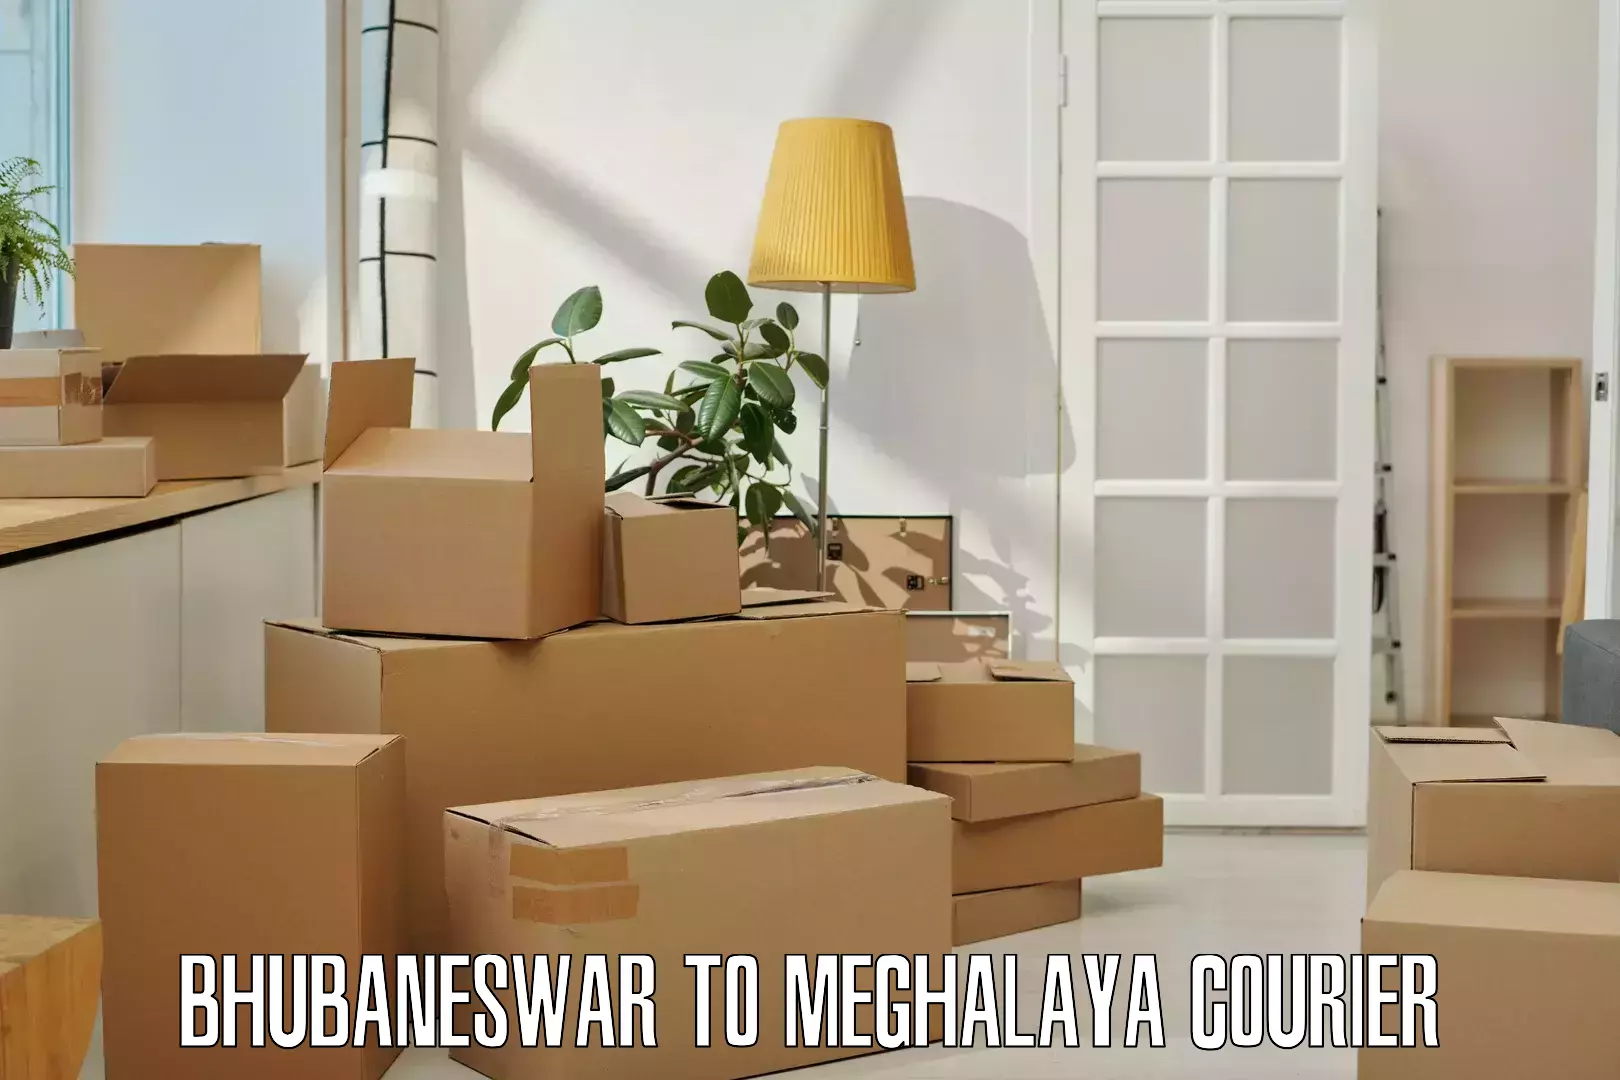 Nationwide delivery network Bhubaneswar to Meghalaya